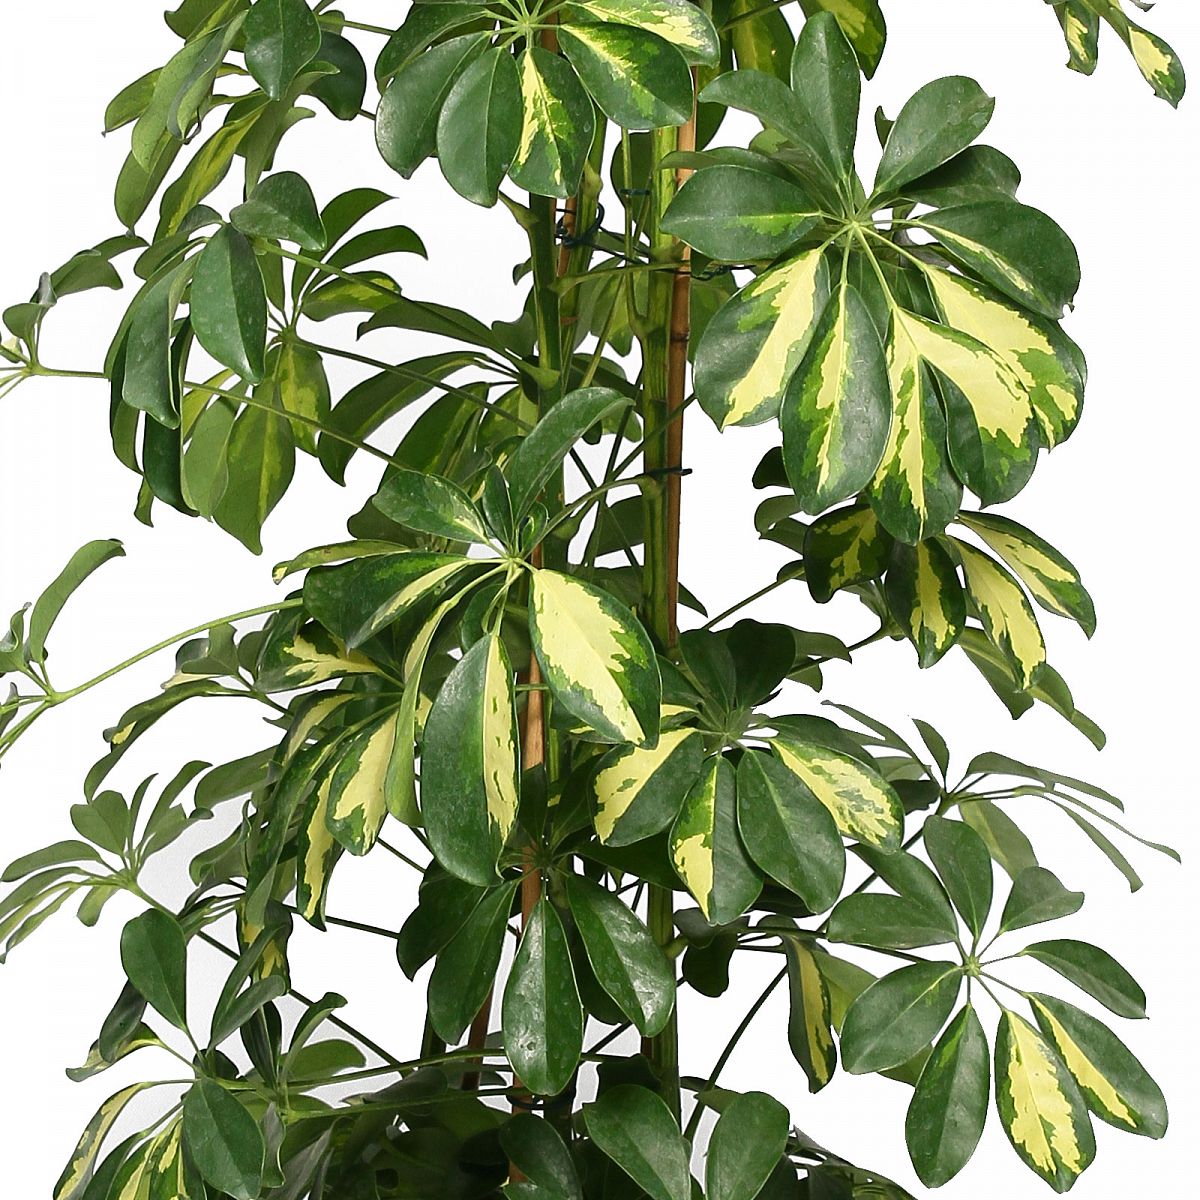 Delicate Umbrella Tree Schefflera arboricola 'Gold Capella' Indoor House Plants